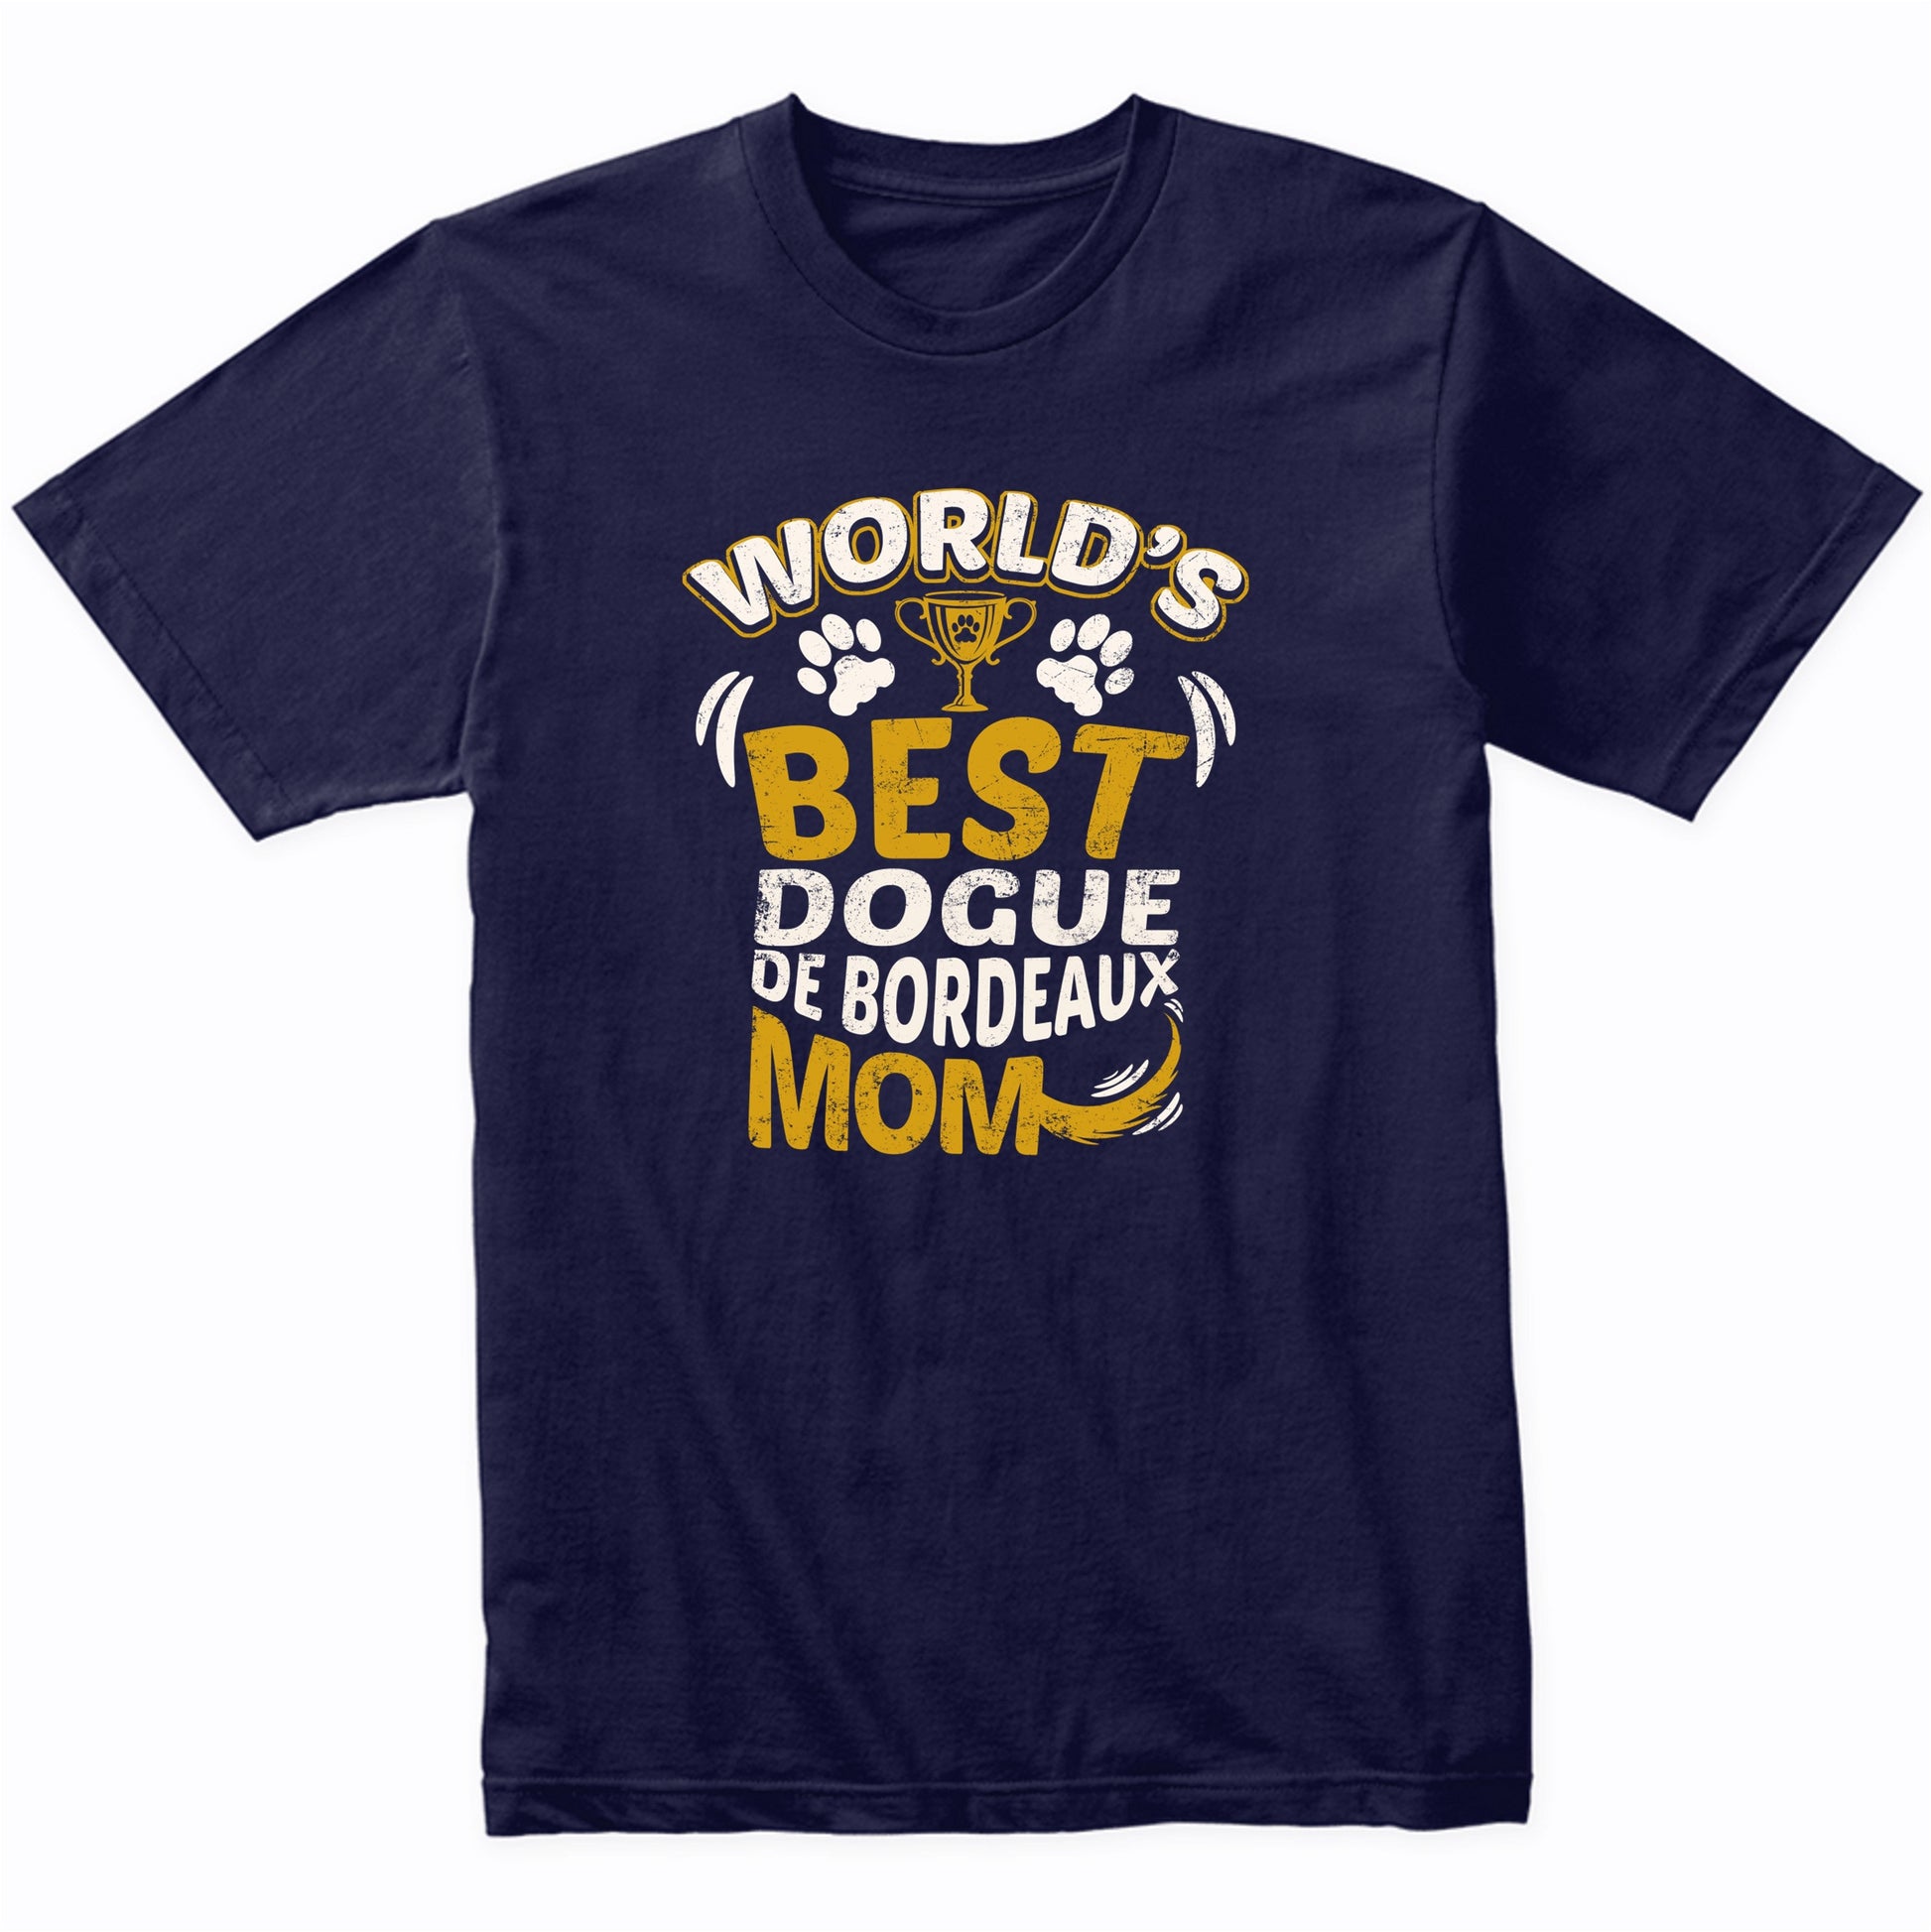 World's Best Dogue de Bordeaux Mom Graphic T-Shirt